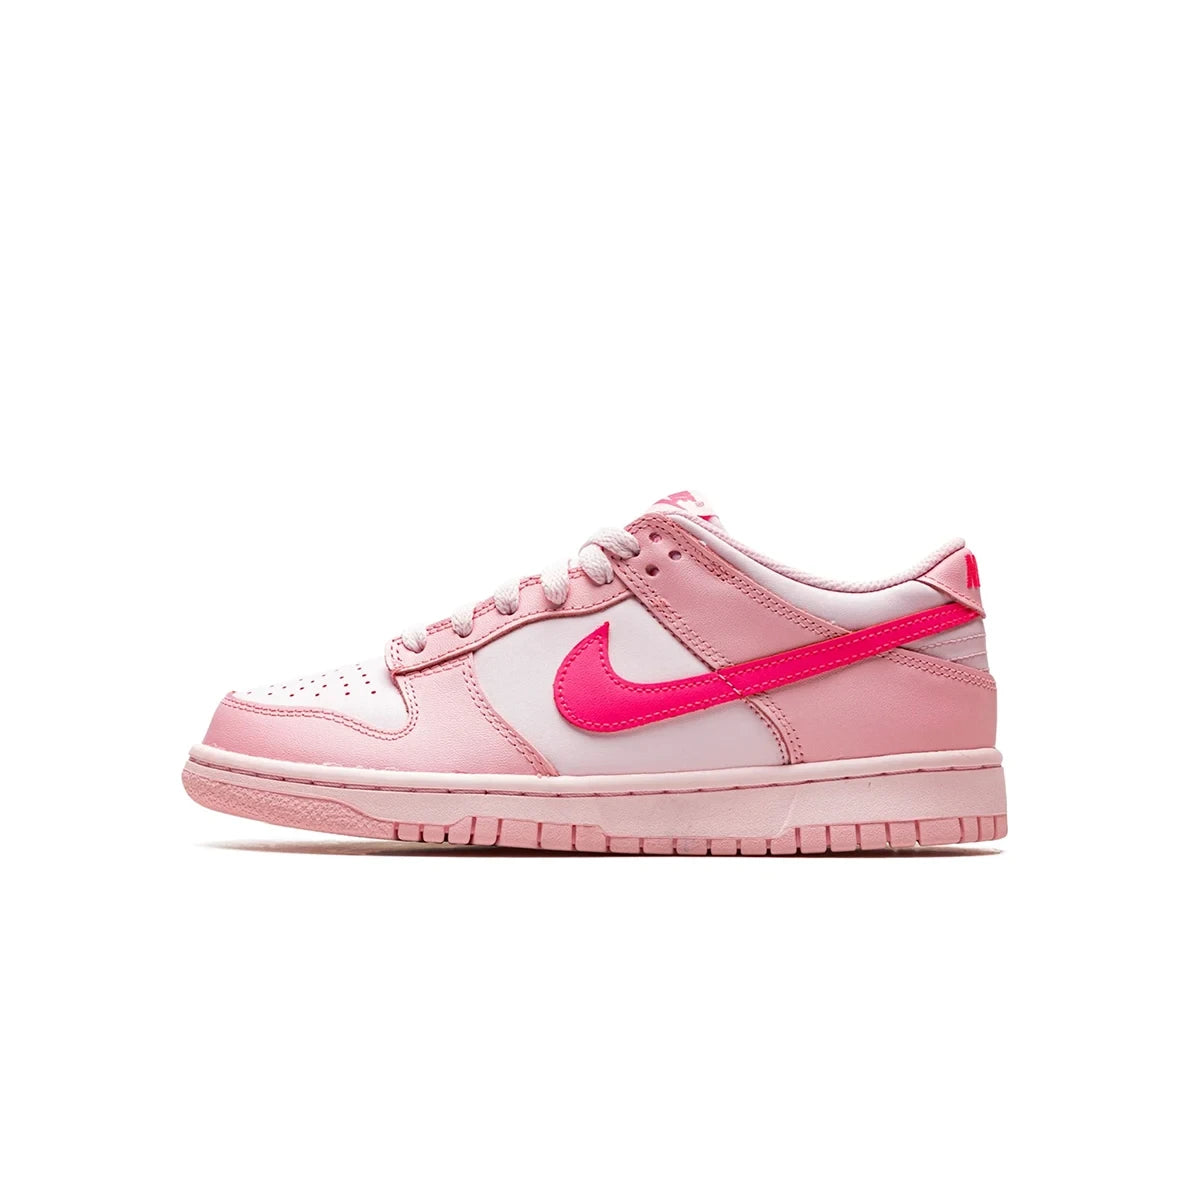 Lato esterno della sneakers Nike Dunk Low Triple Pink Barbie